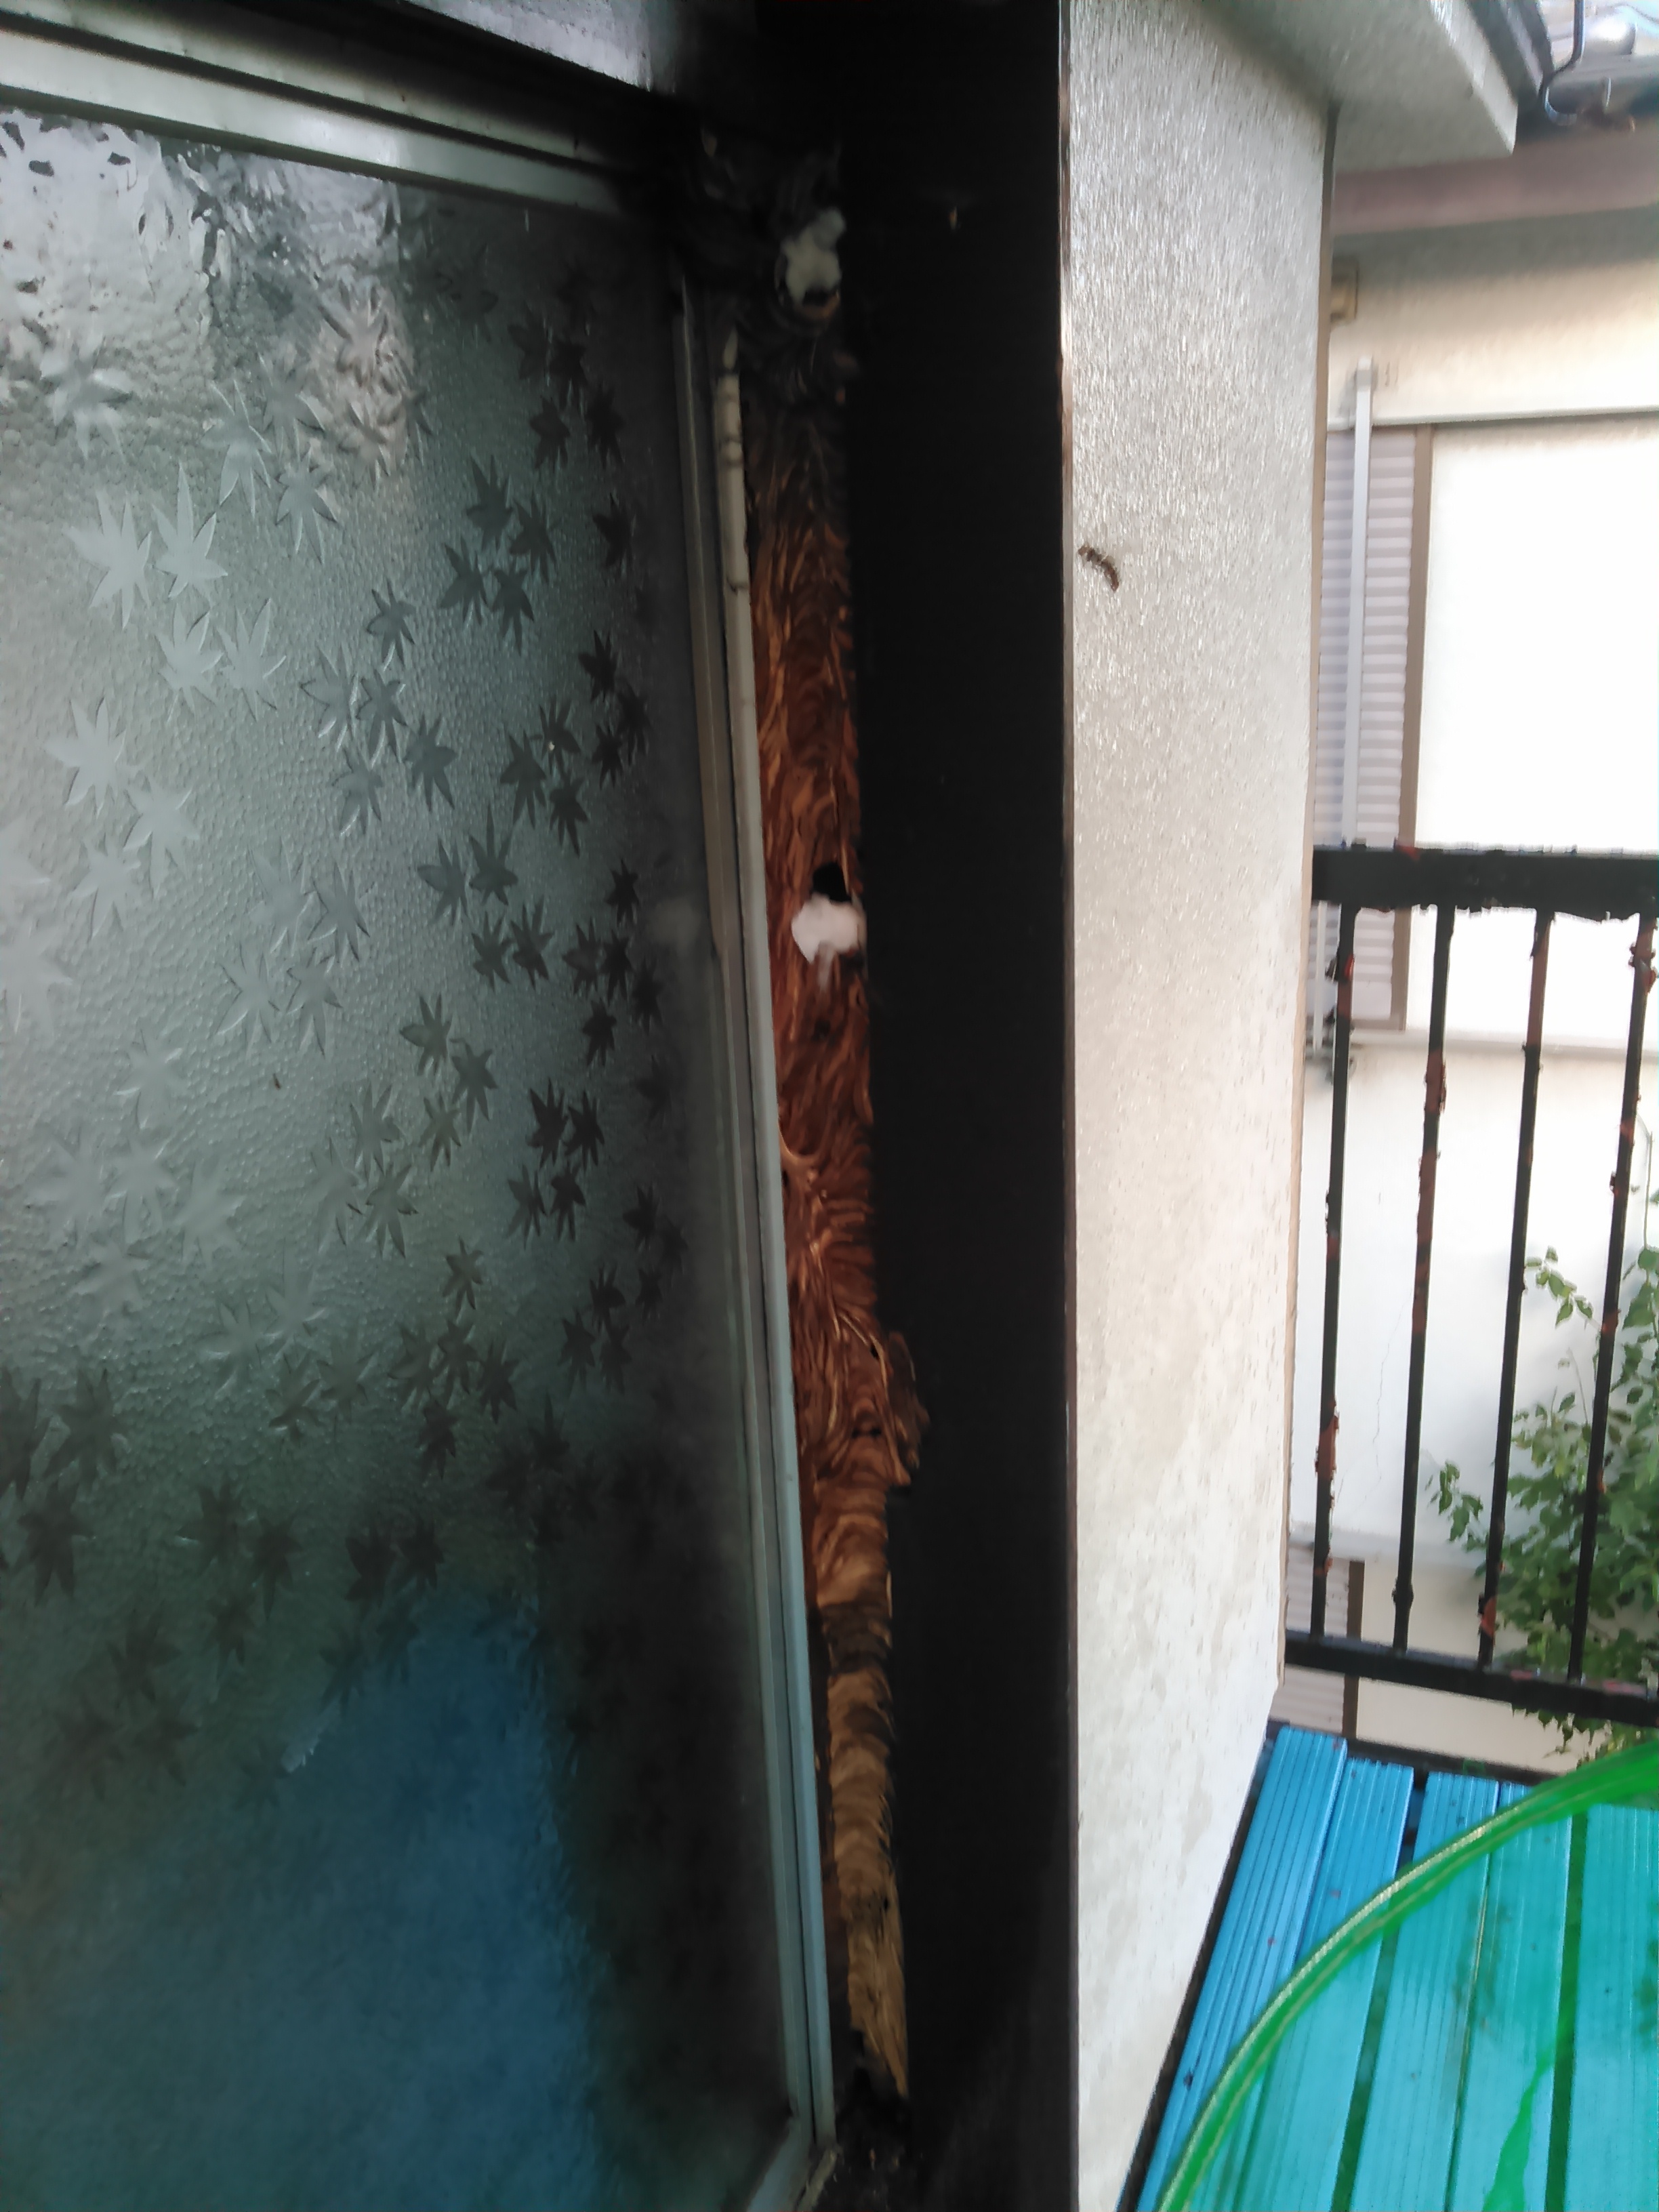 9月中旬 野田市内 アパートの戸袋いっぱいのモンスズメバチの巣駆除 野田市 常総市 春日部市など スズメバチ 蜂の巣駆除サービス 蜂 駆屋 はちくや